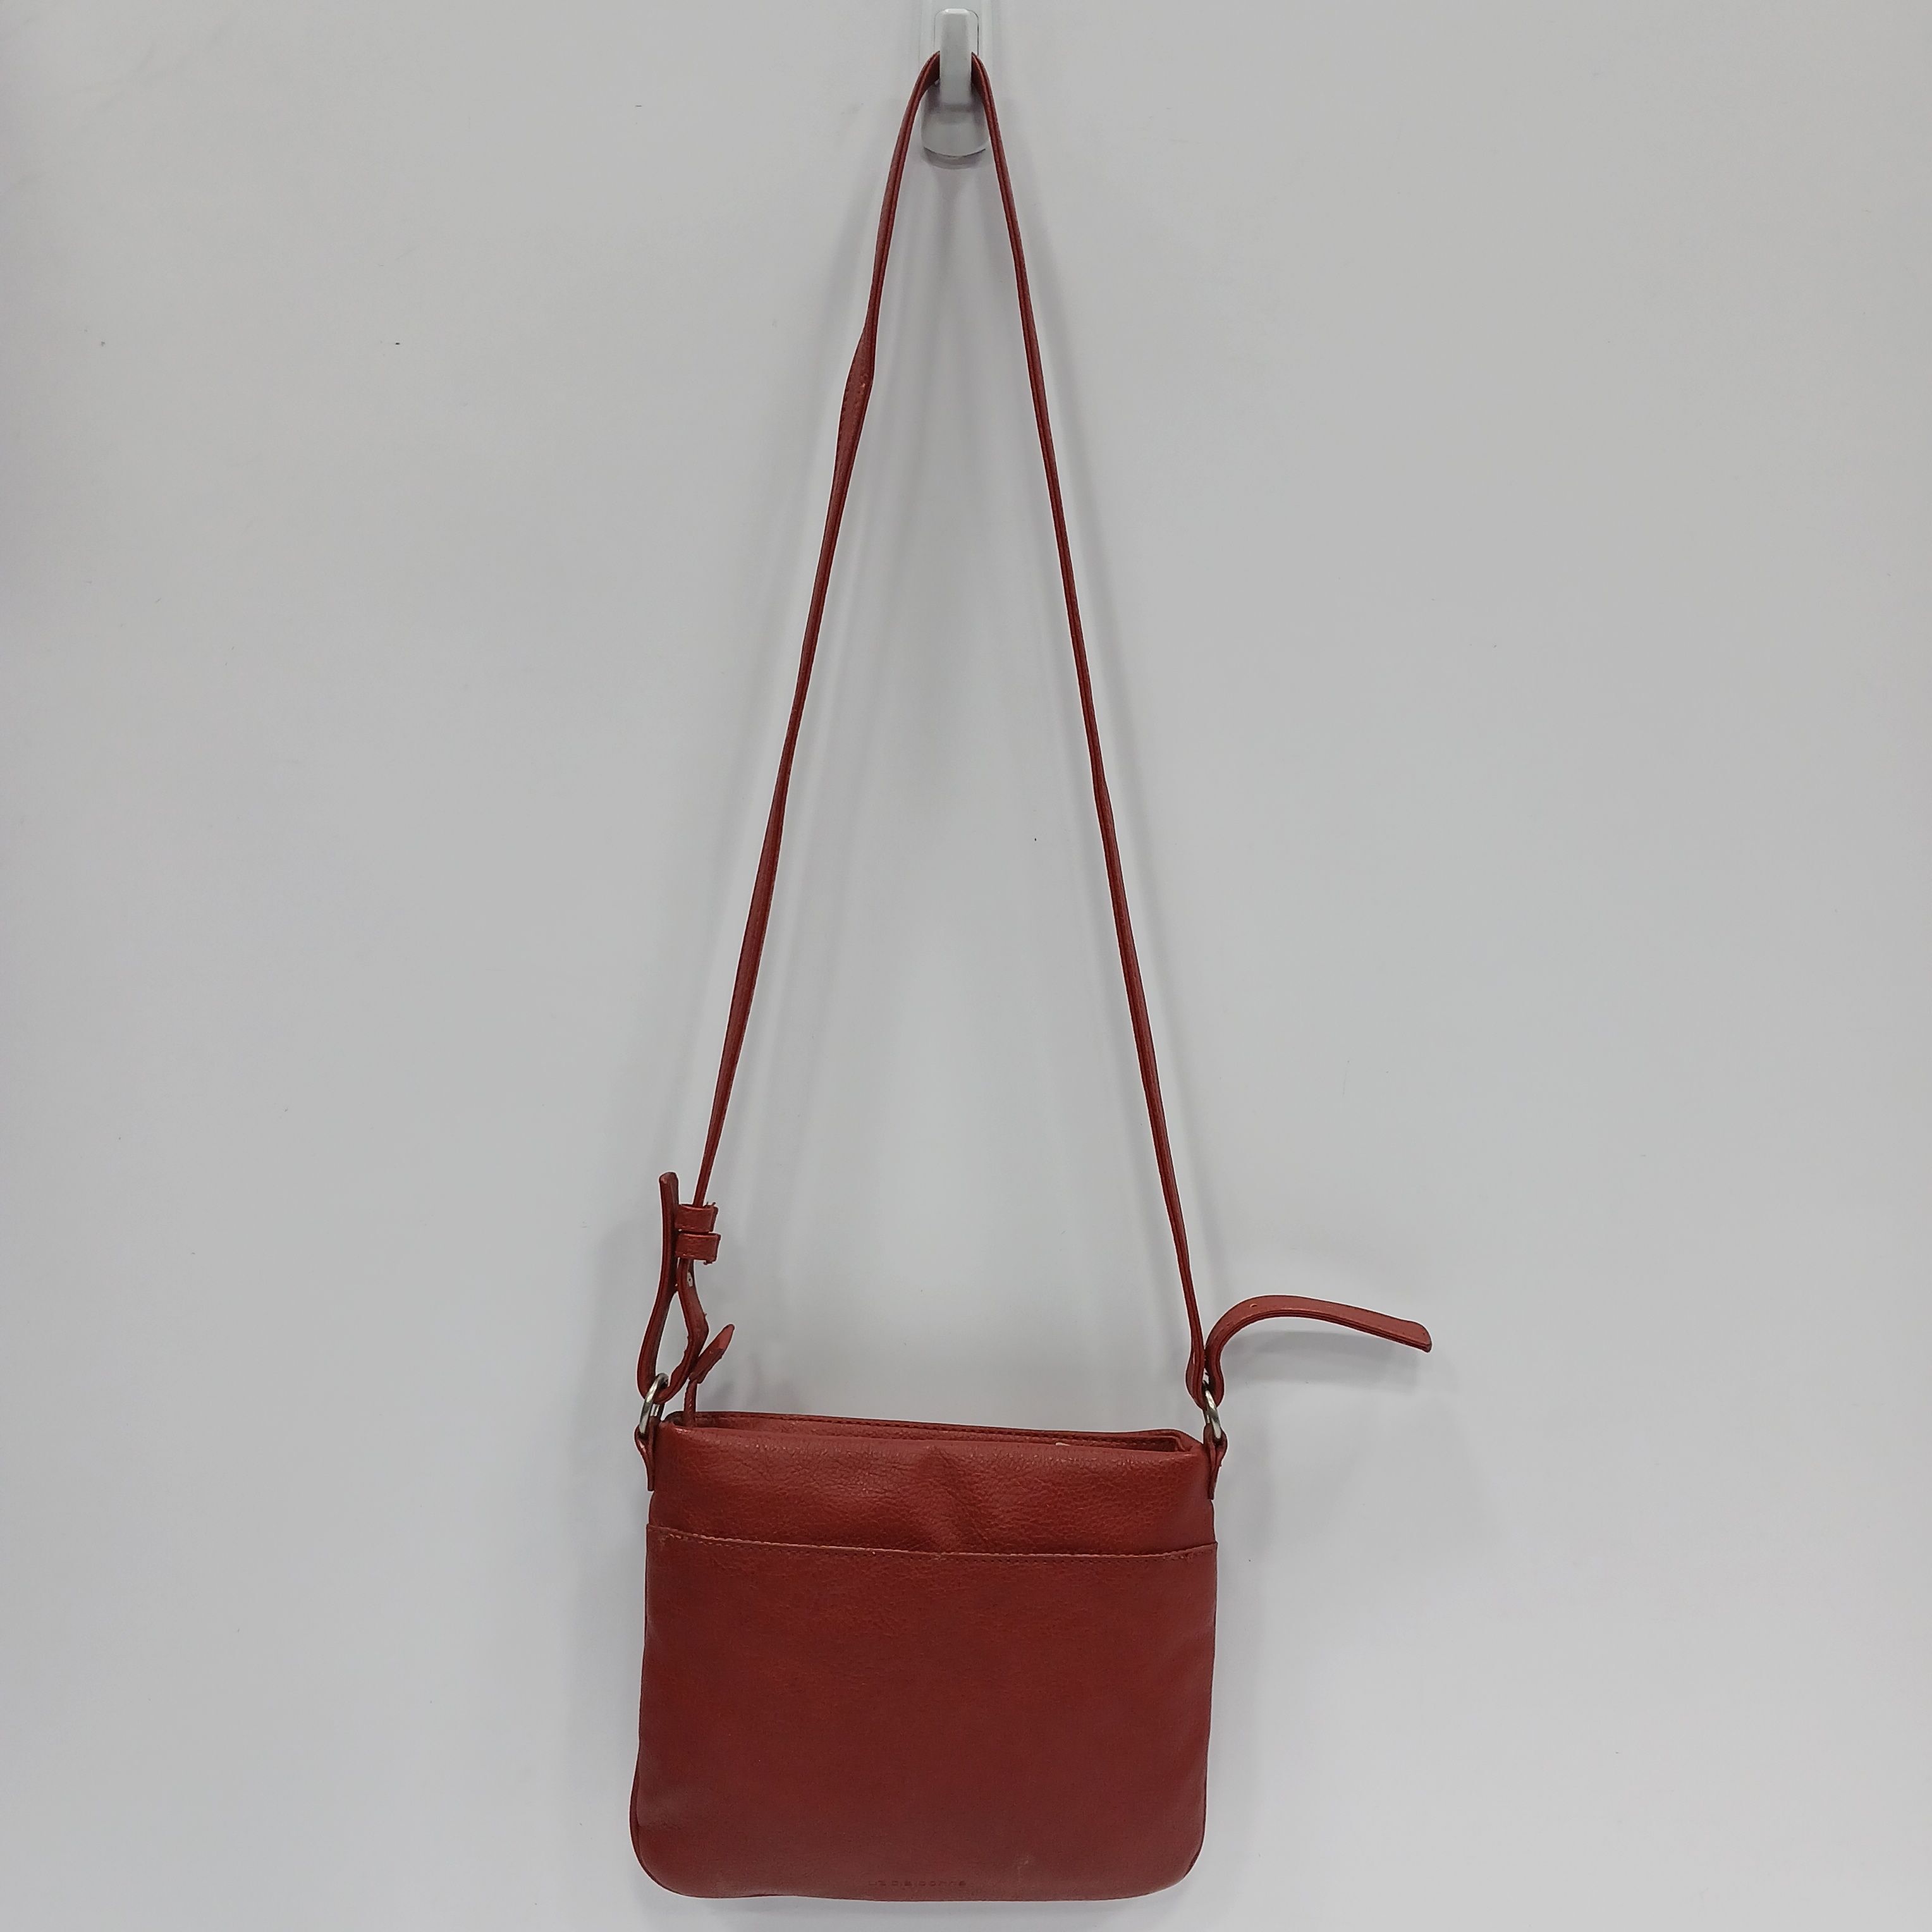 Liz Claiborne BROWN / MAROON Bag Purse Shoulder Bag Bucket | eBay